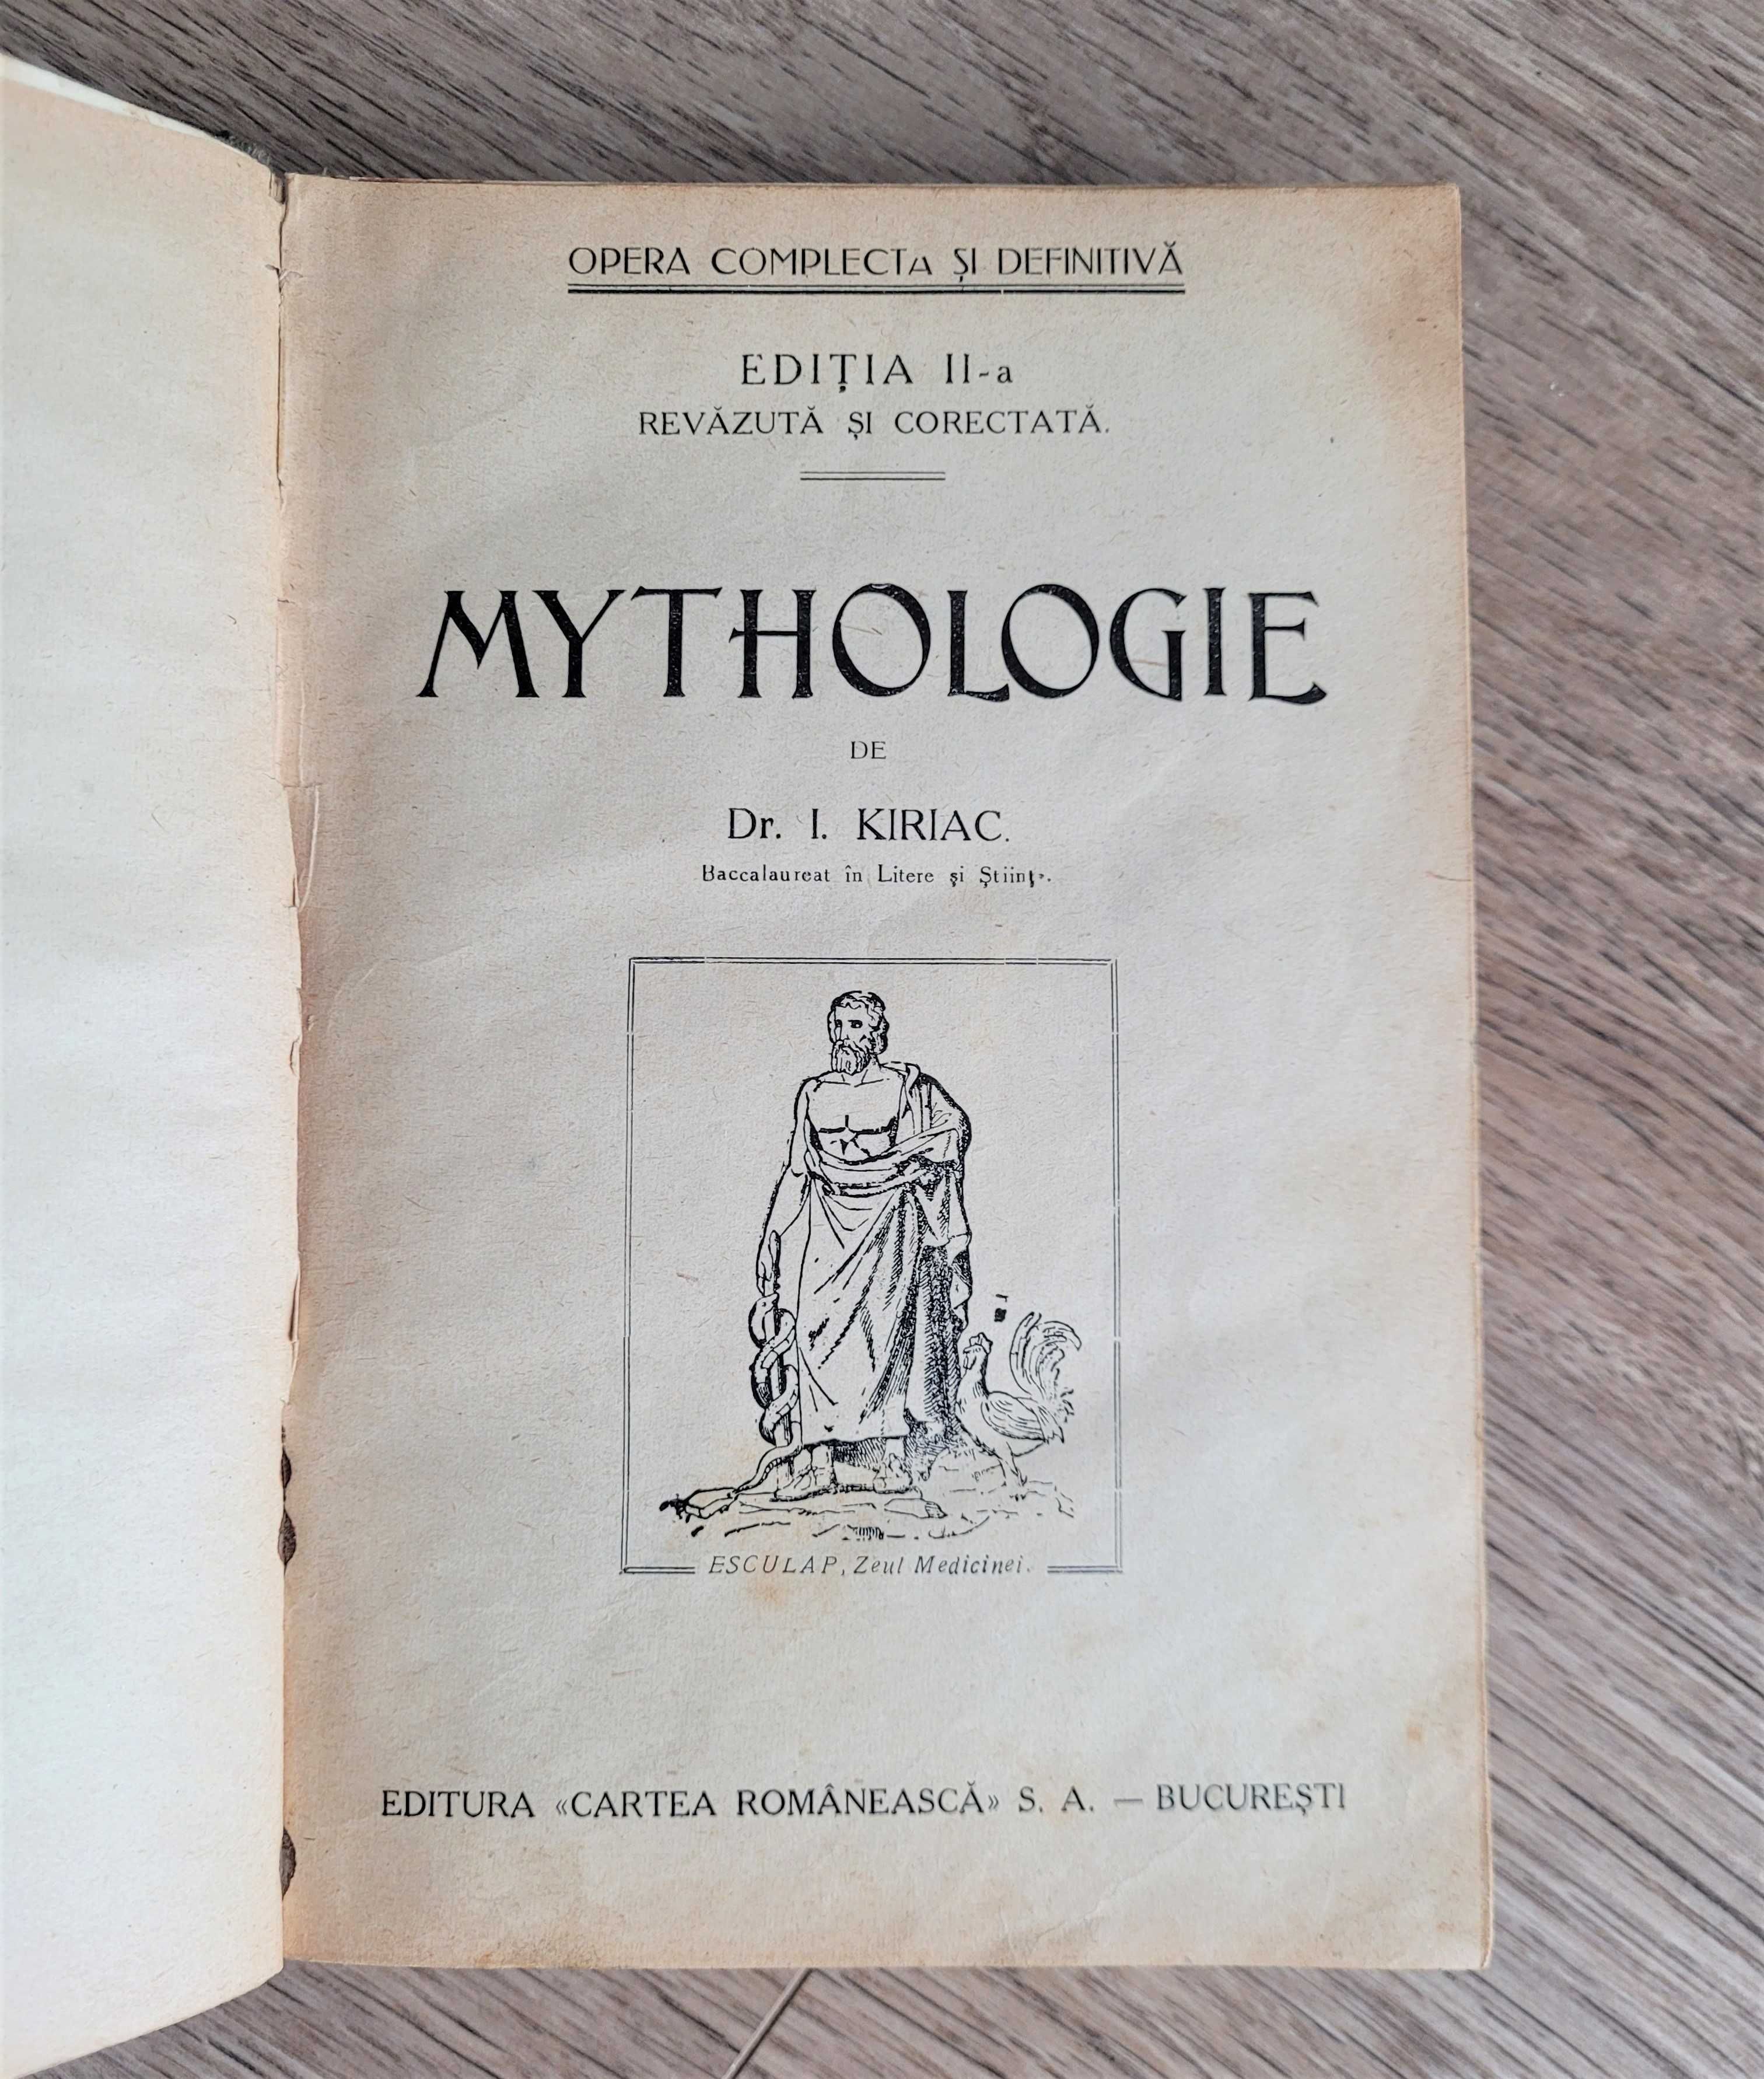 Dr. I. Kiriac - Mythologie, Ediția a II-a, Cartea Românească 1926